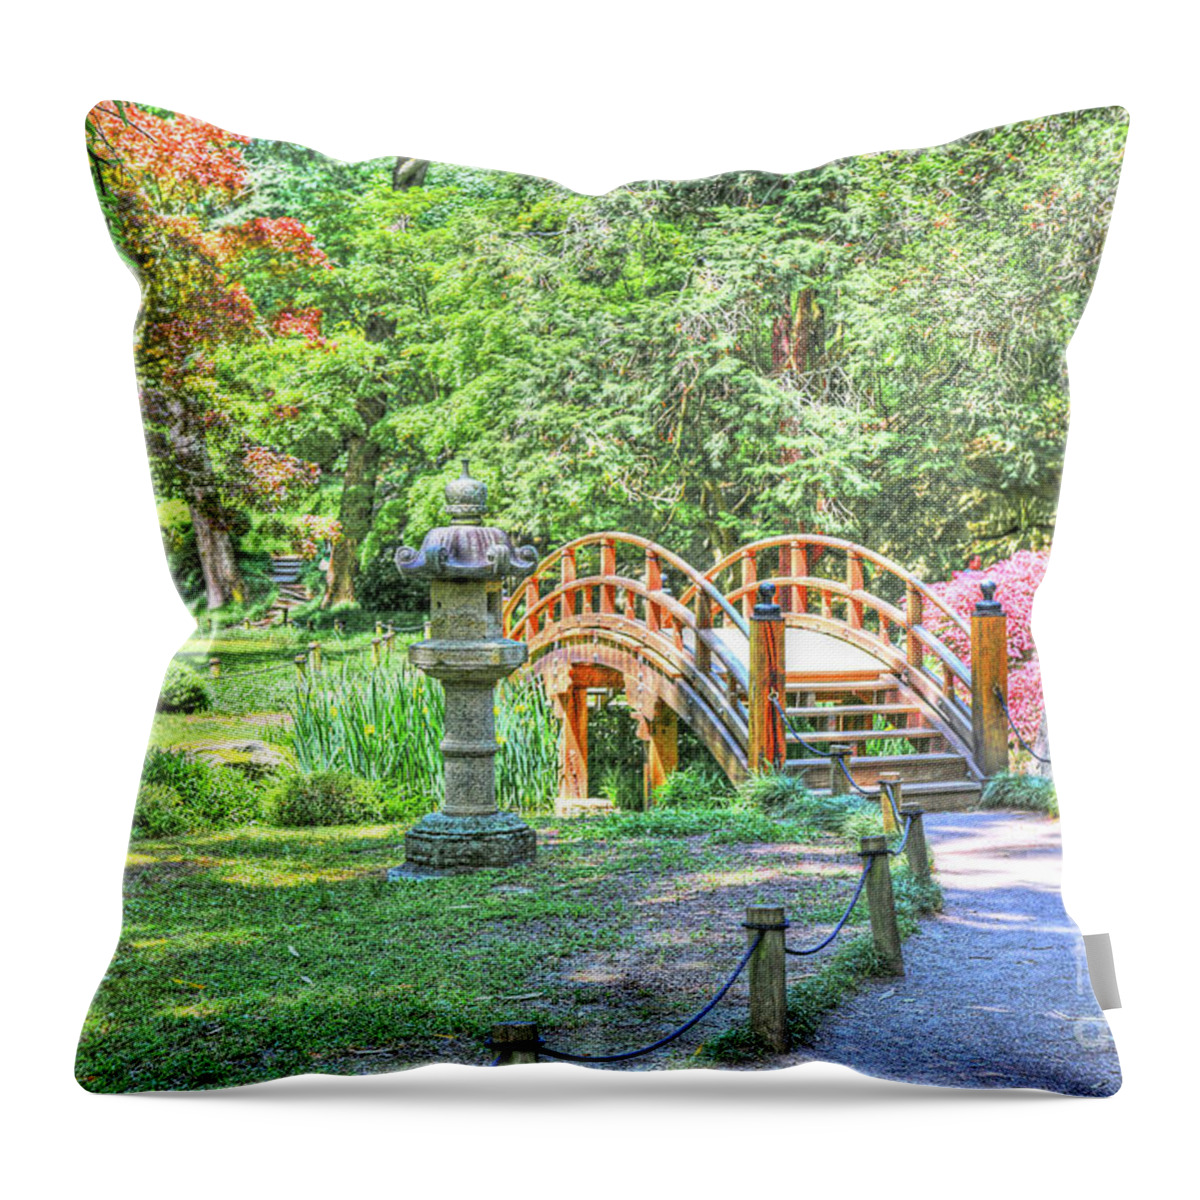 Richmond Va Virginia Throw Pillow featuring the photograph Richmond VA Virginia - Maymont Japanese Garden Bridge - In Color #1 by Dave Lynch